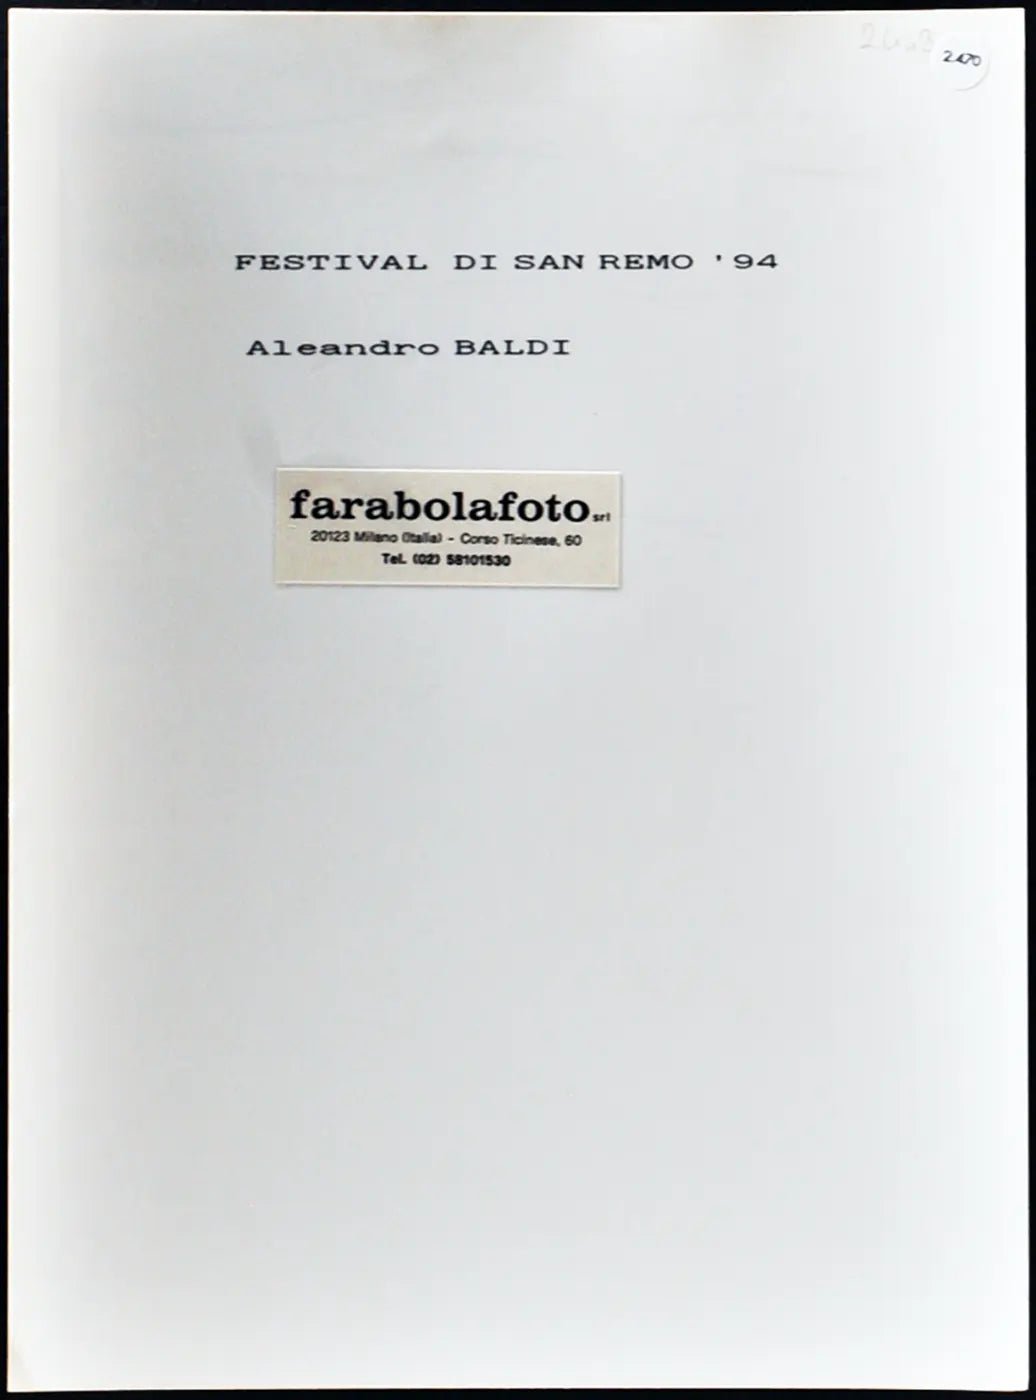 Festival di Sanremo 1994 Loredana Berte' Ft 2470 - Stampa 24x18 cm - Farabola Stampa ai sali d'argento